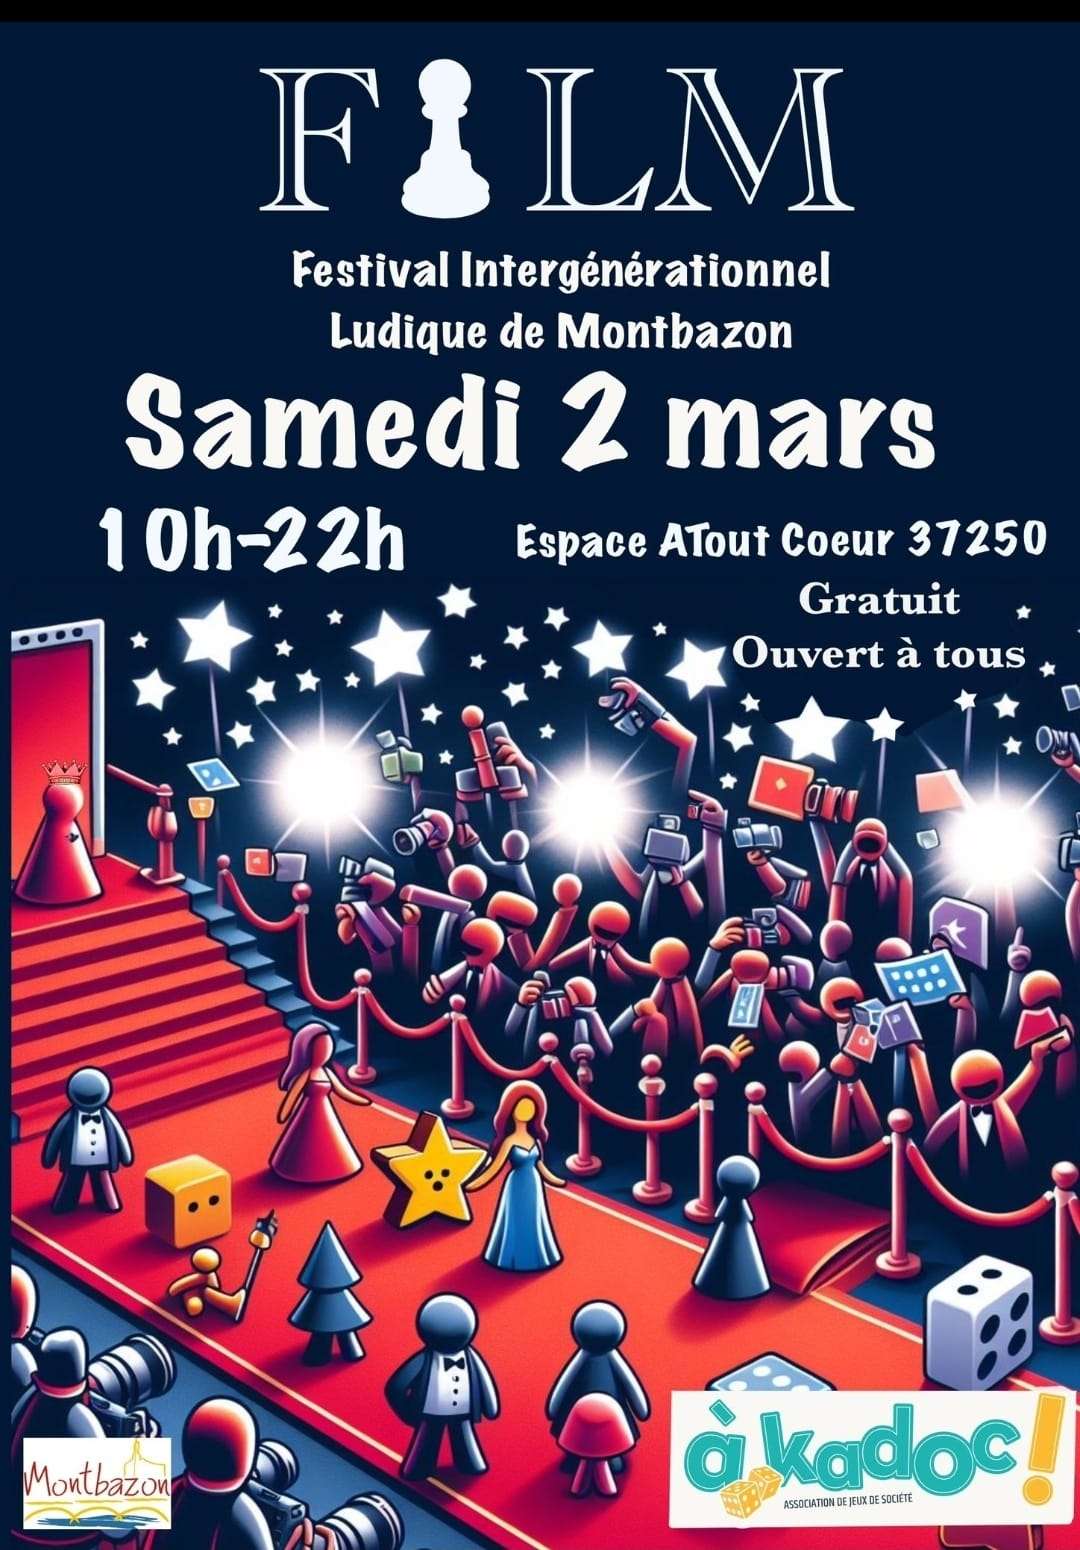 Festival Intergénérationnel Ludique de Montbazon